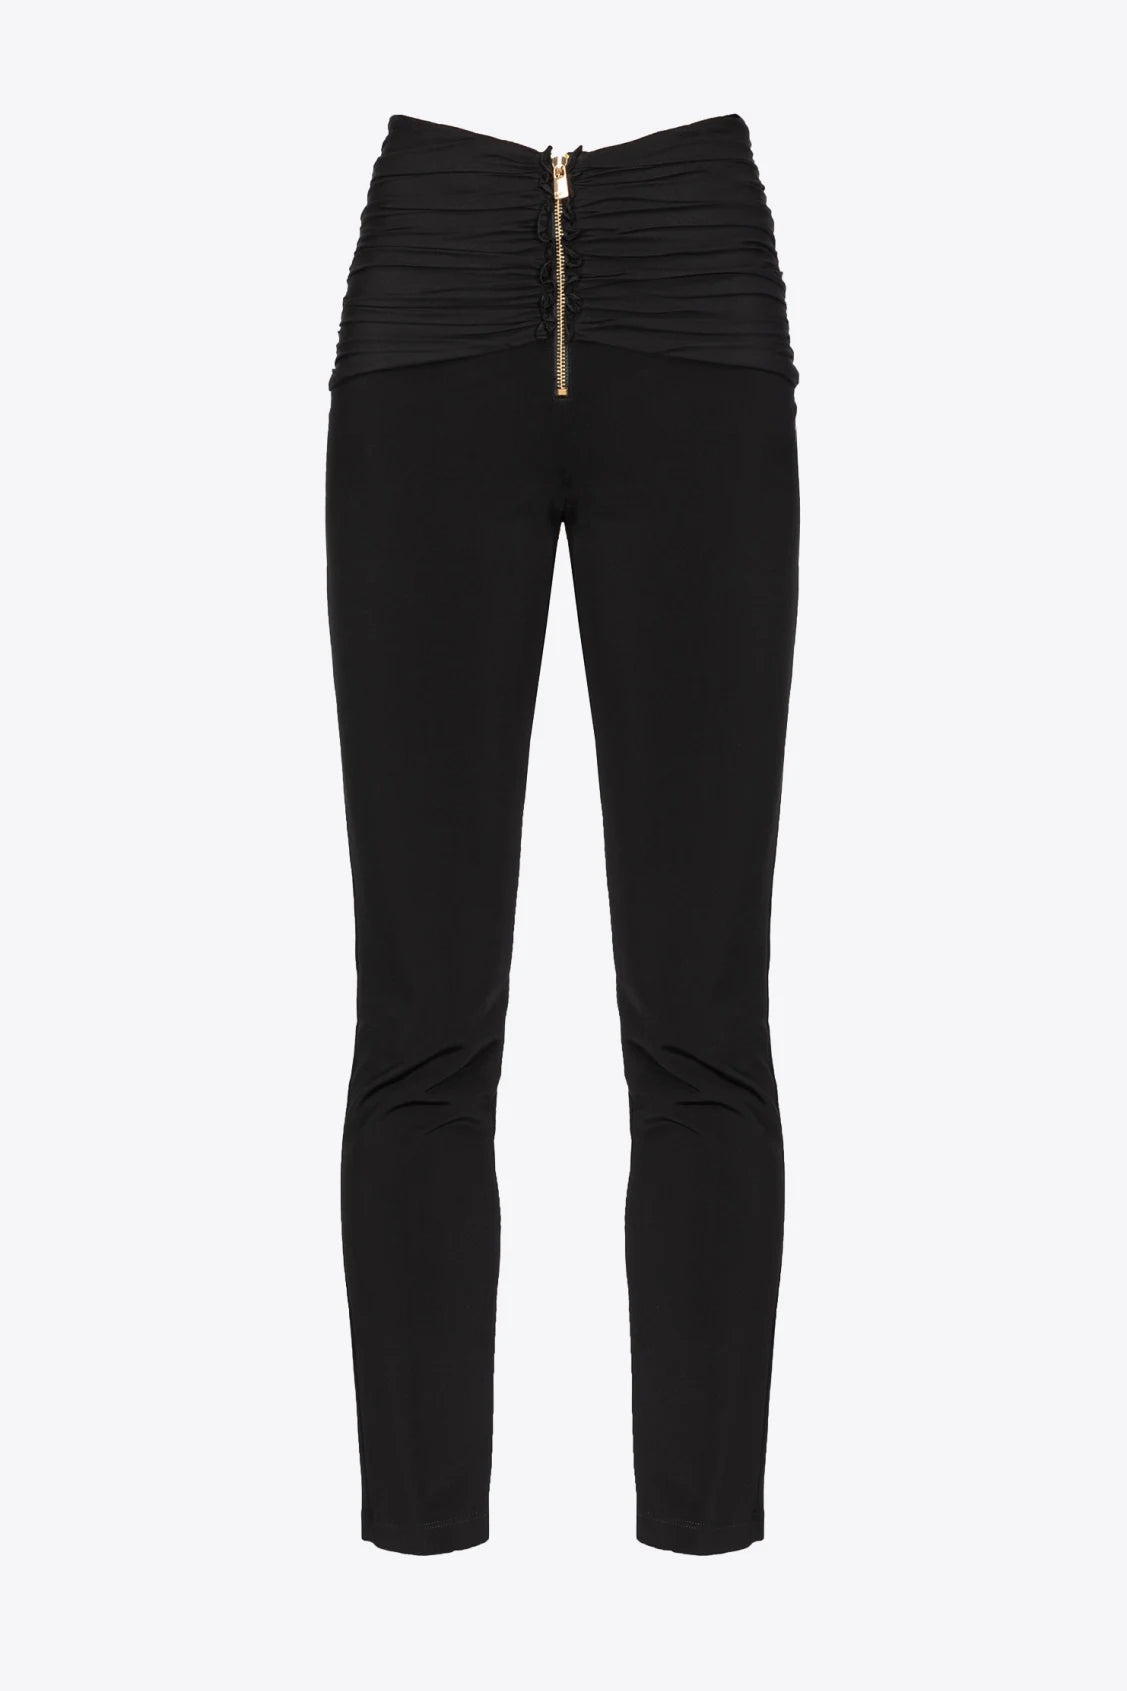 Pantalone Aderente con Zip / Nero - Ideal Moda